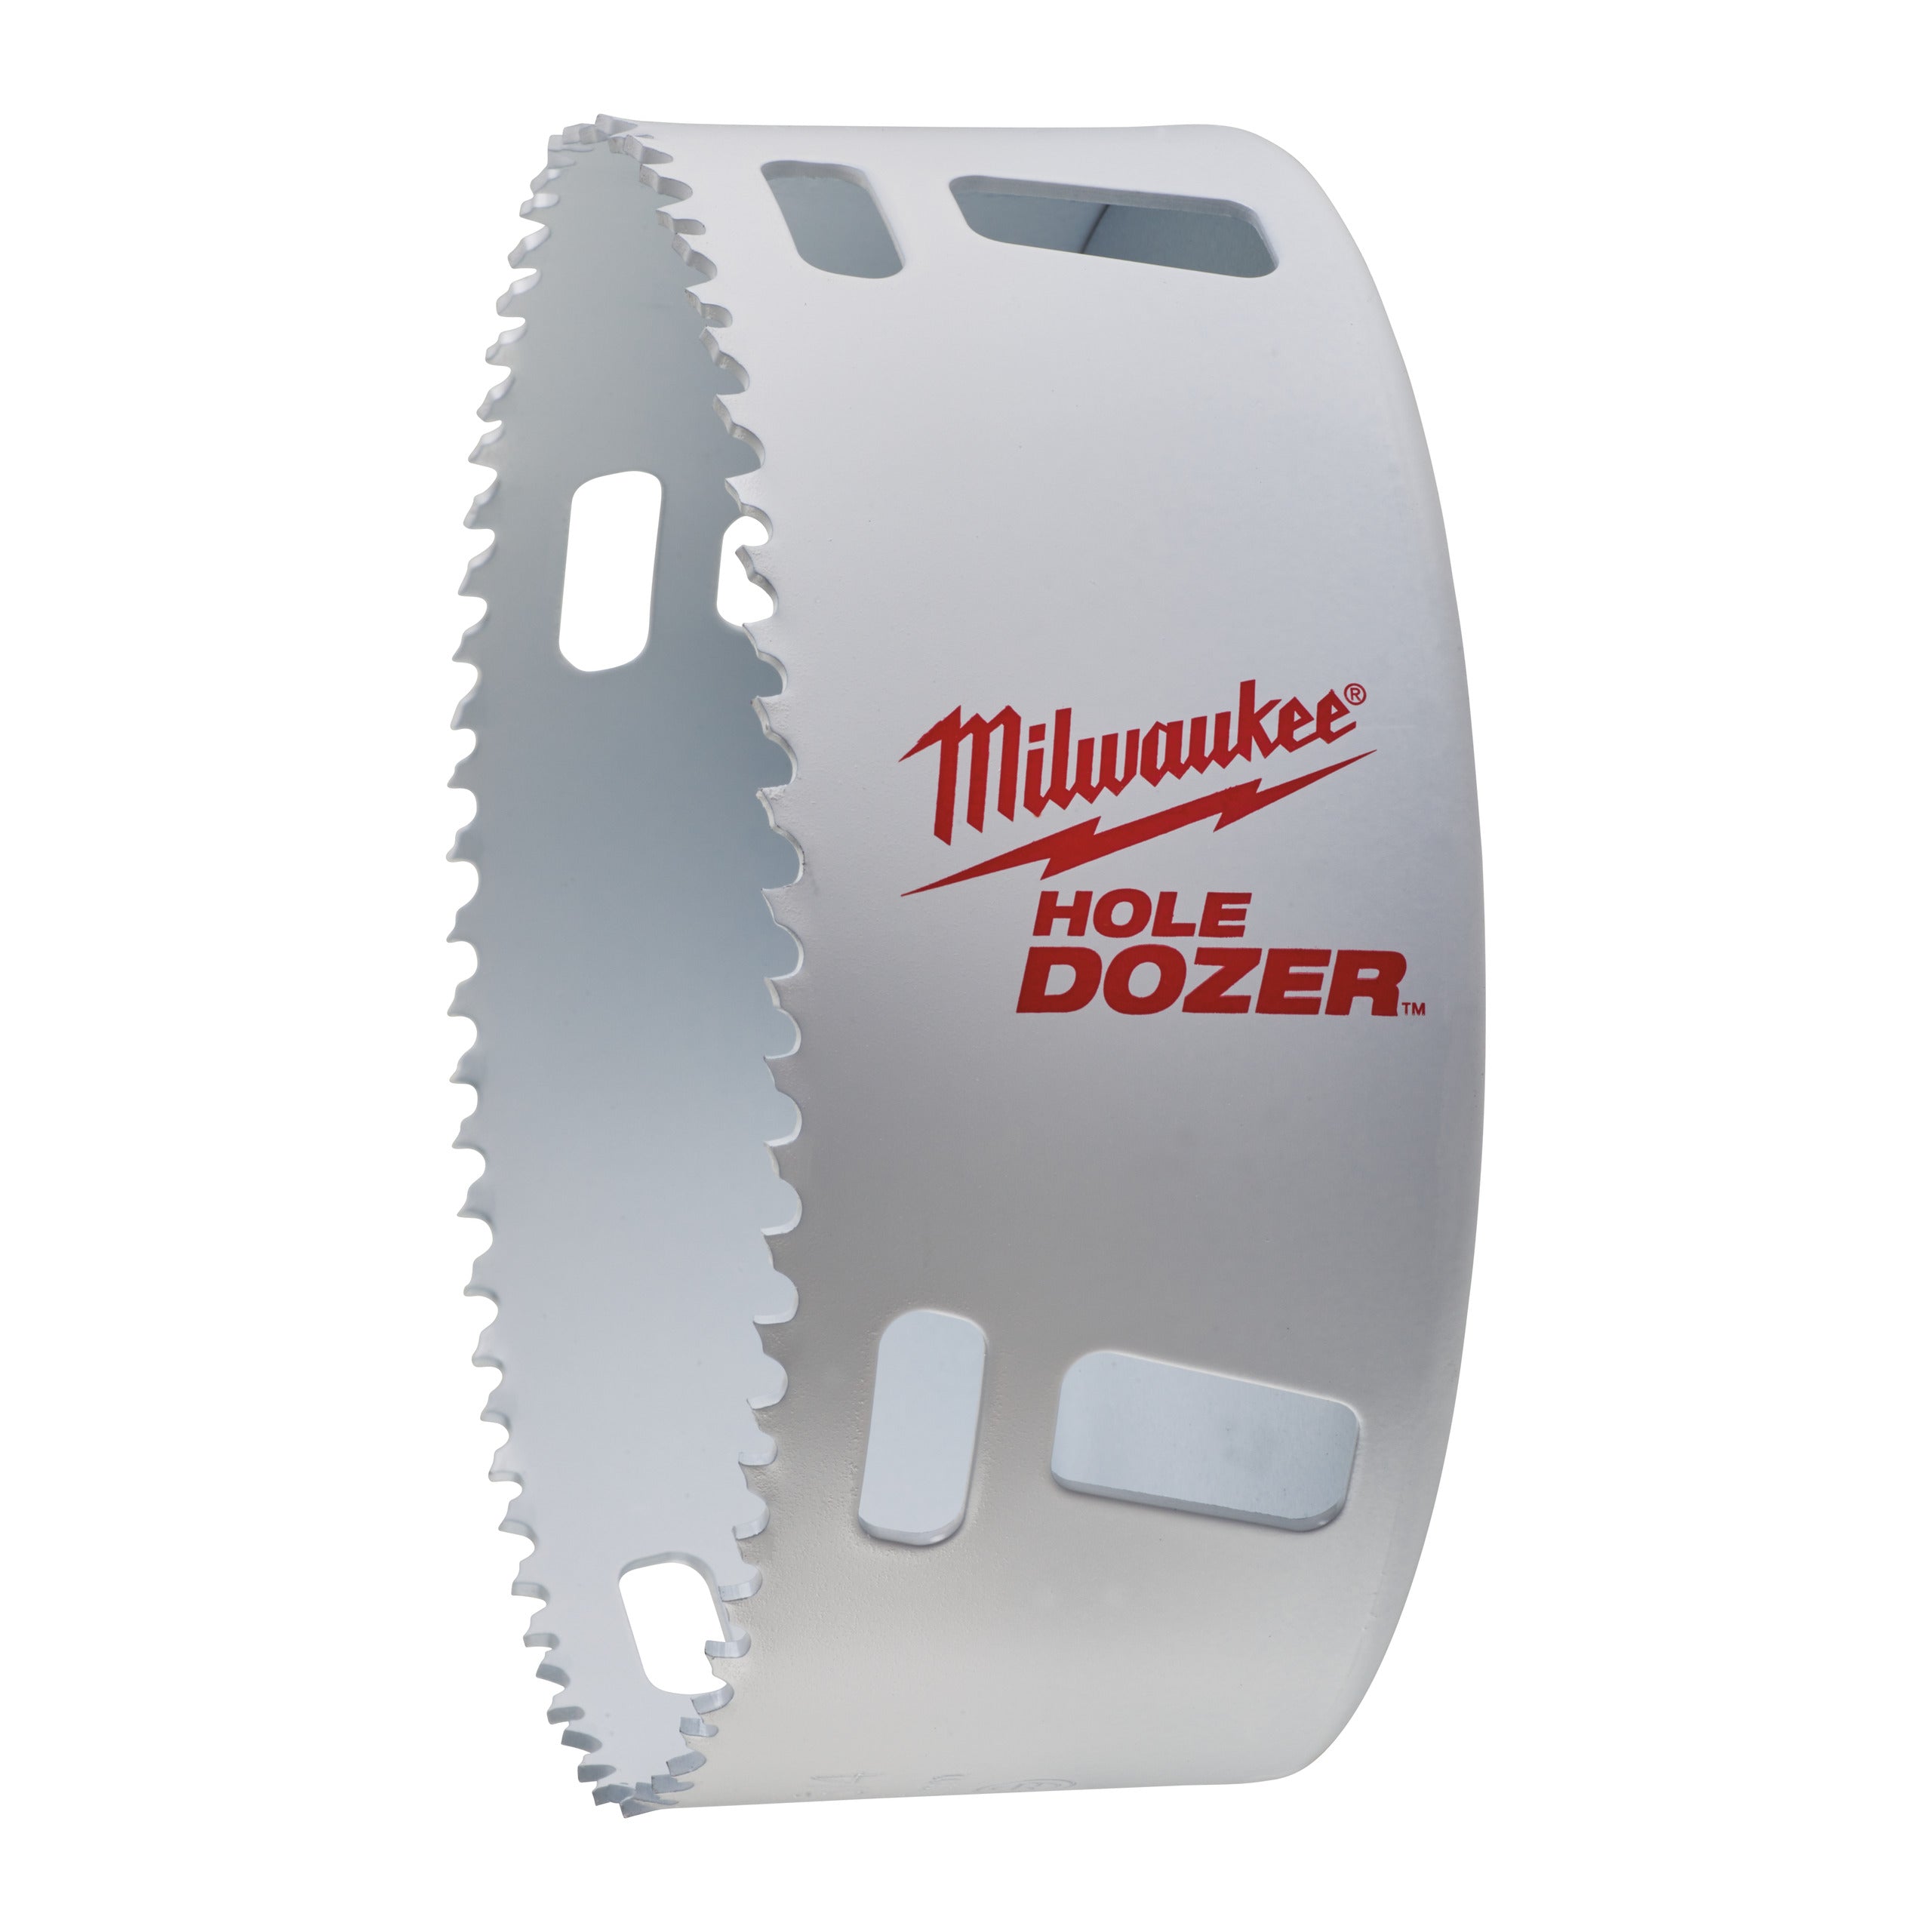 Carotă Milwaukee HOLE DOZER™ bi-metal Ø121 mm 49560237